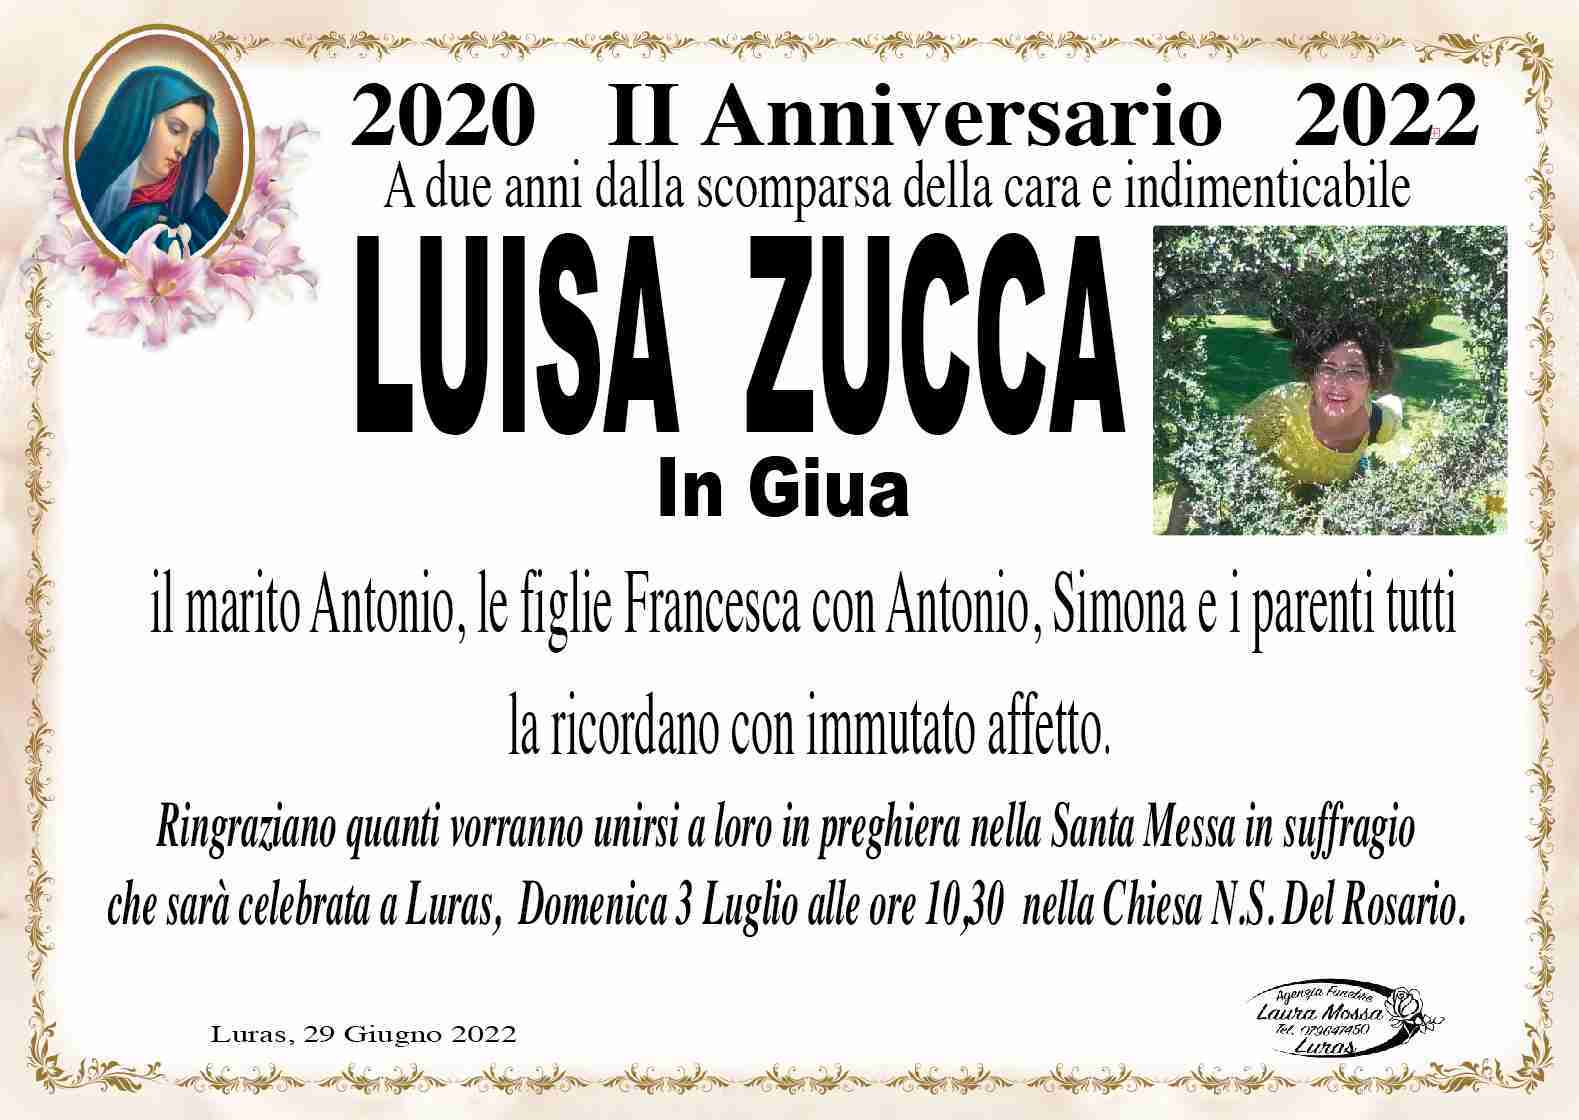 Luisa Zucca in Giua